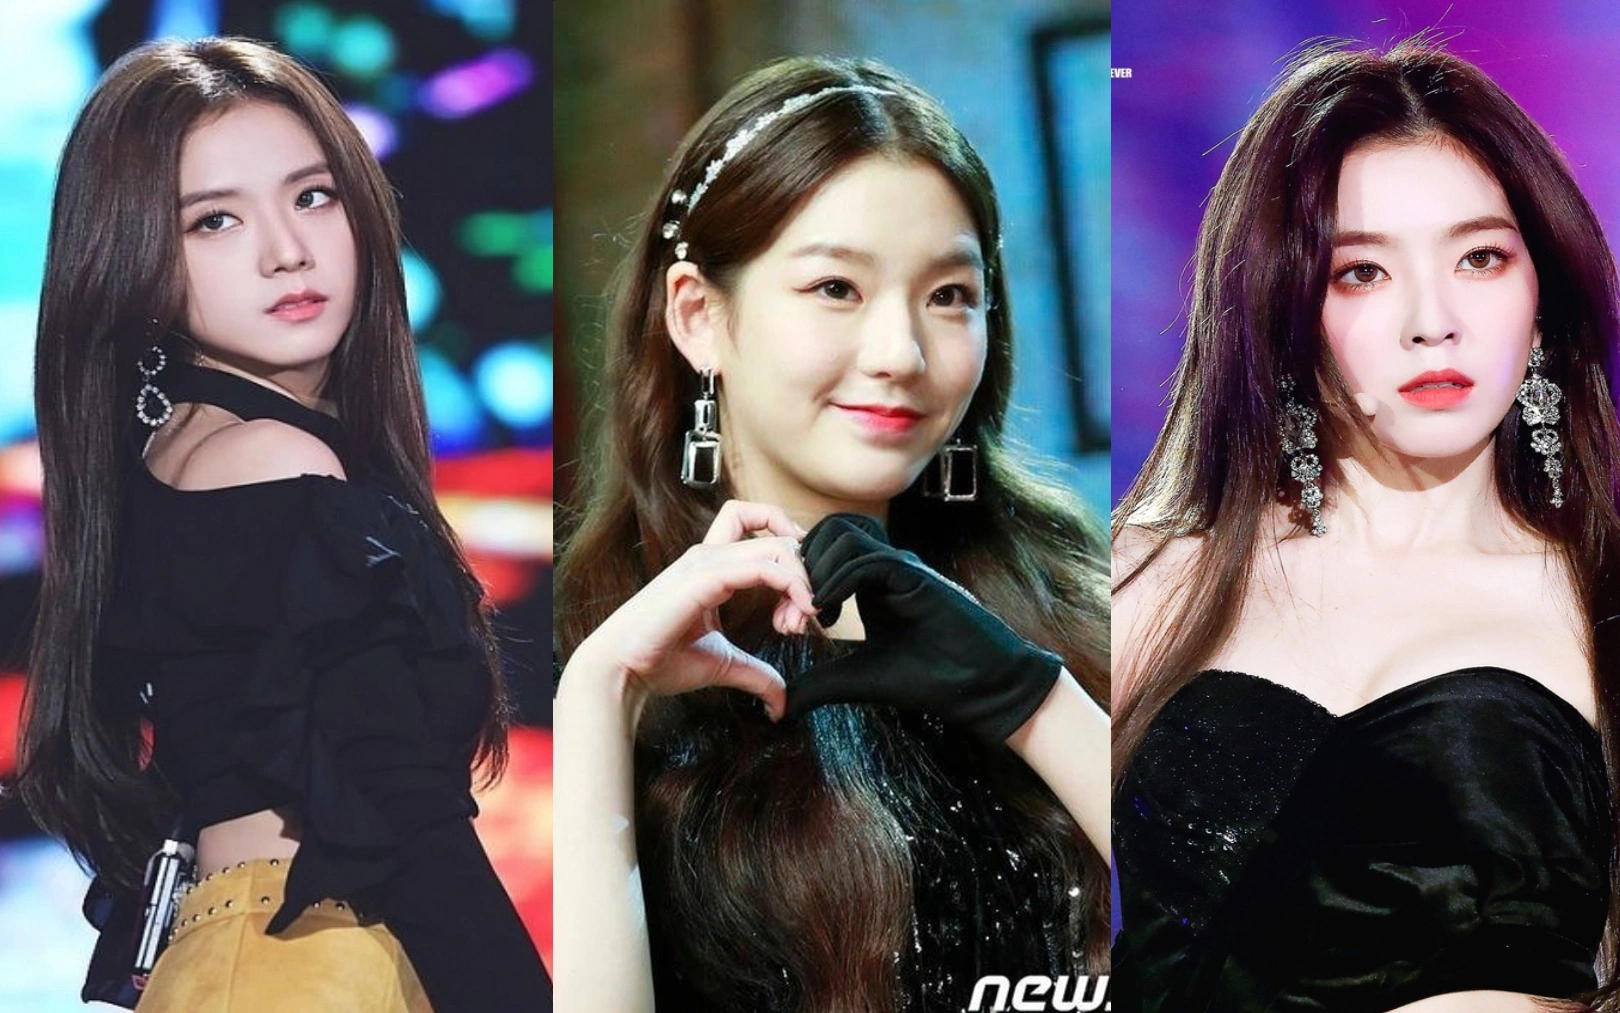 Nhóm nữ bị tố hỗn láo với Jennie (BLACKPINK), nhảy giỏi hơn Lisa lại được so sánh nhan sắc ngang ngửa Jisoo - Irene (Red Velvet)